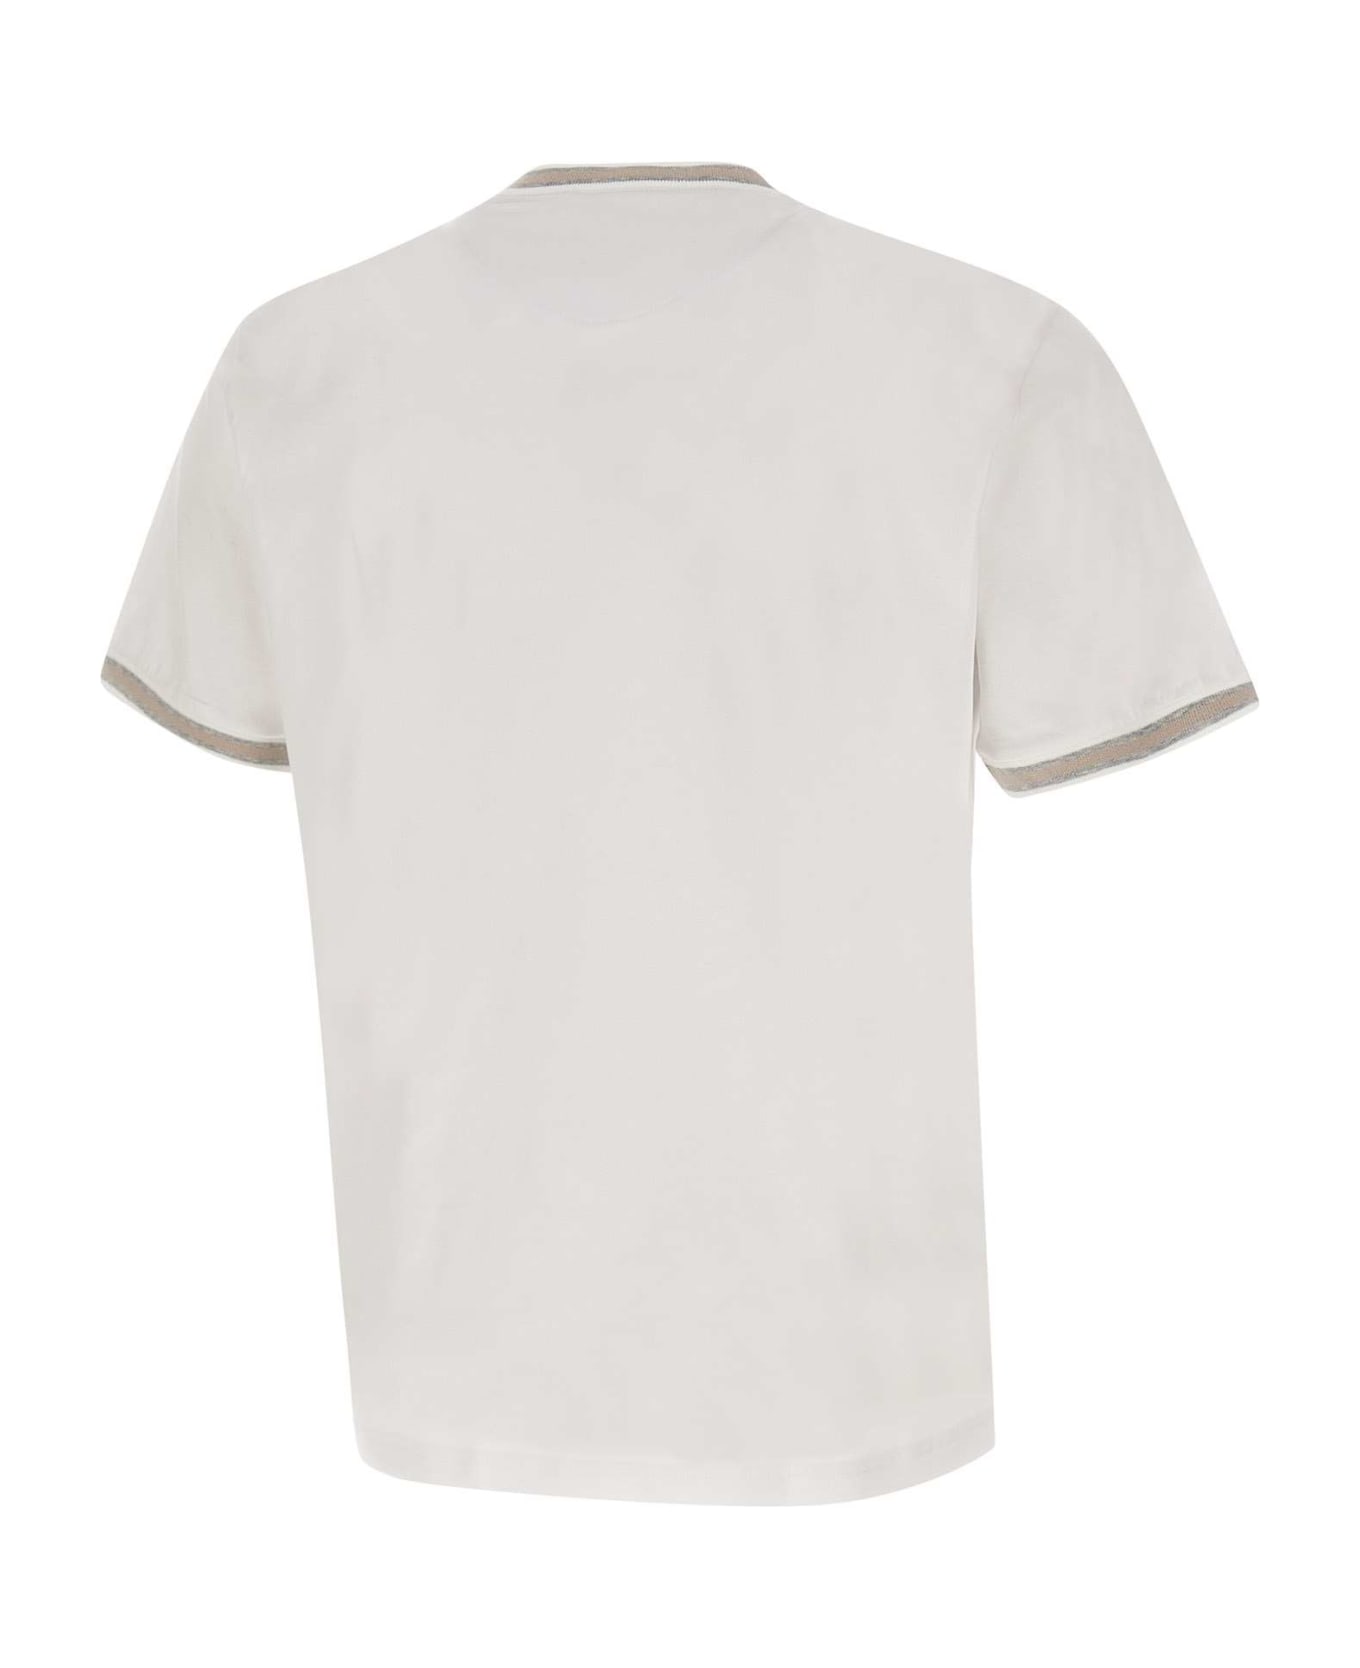 Eleventy Cotton T-shirt - White シャツ